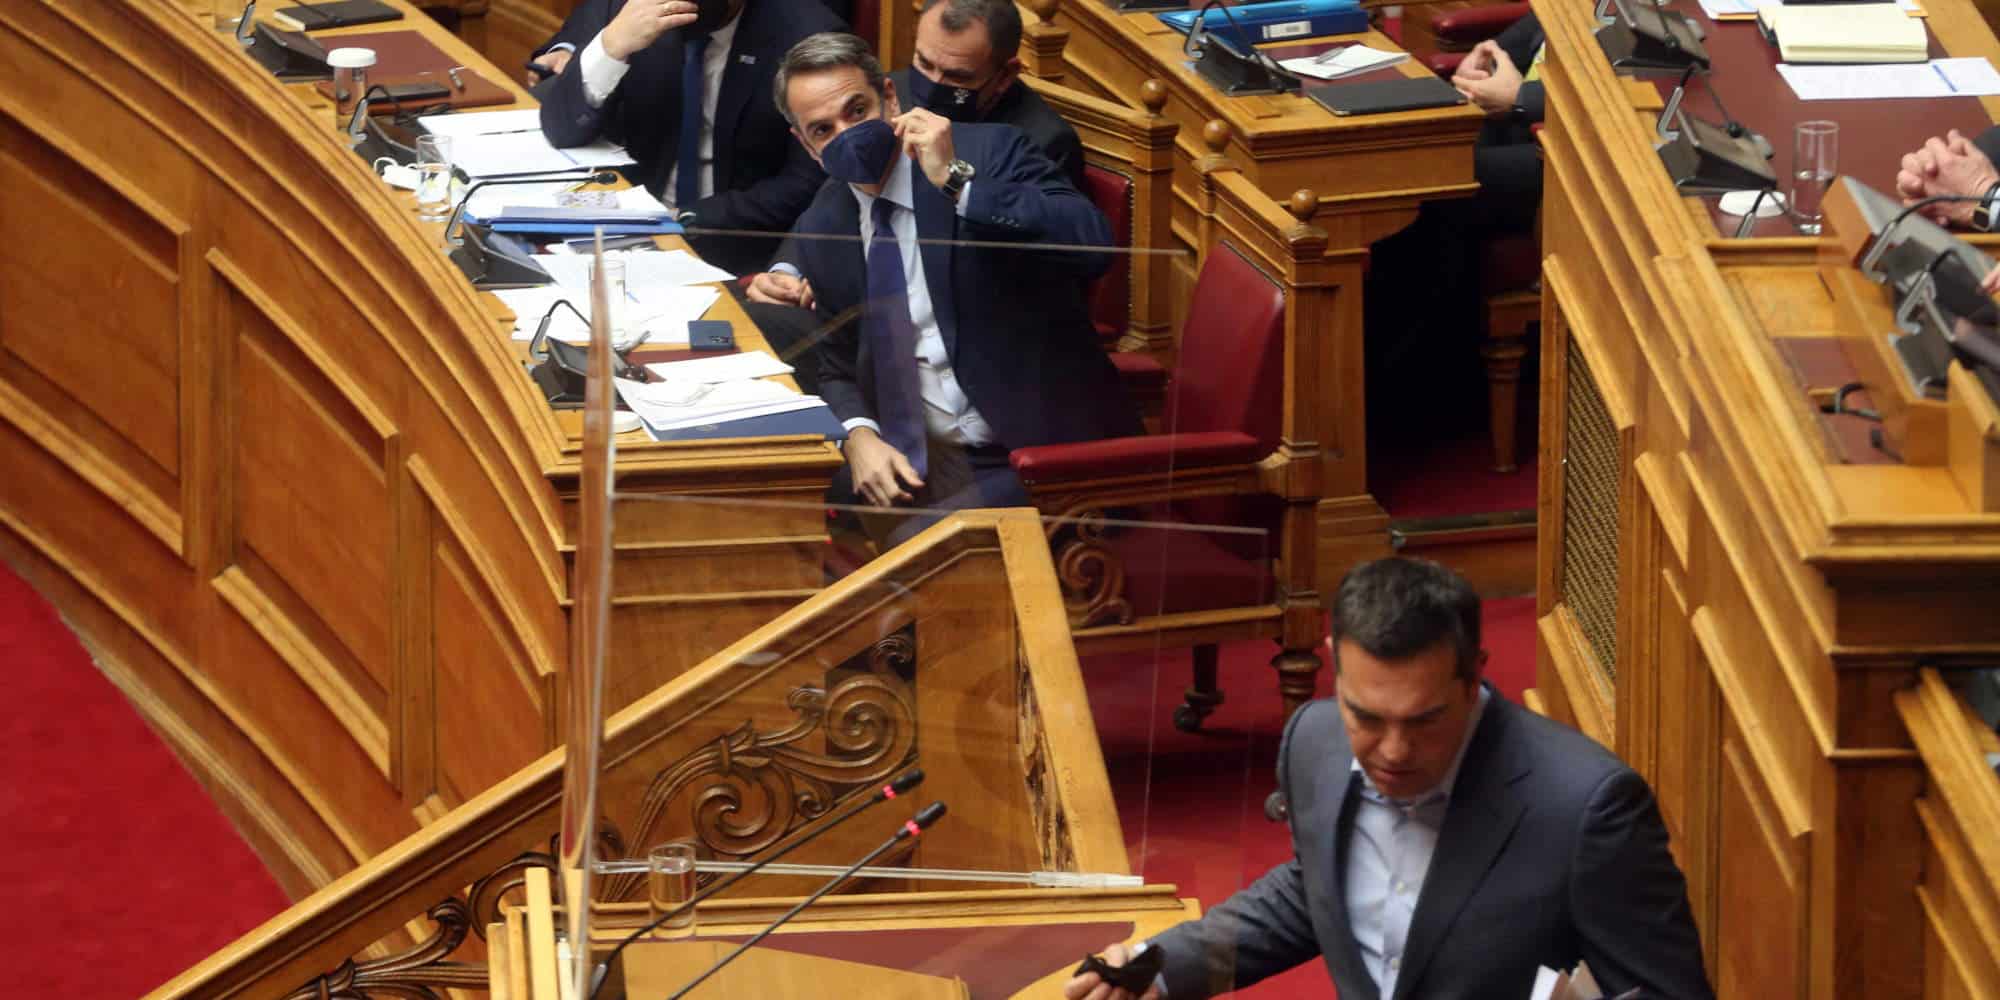 Ο Κυριάκος Μητσοτάκης παρακολουθεί τον Αλέξη Τσίπρα να αποχωρεί από το βήμα της Βουλής